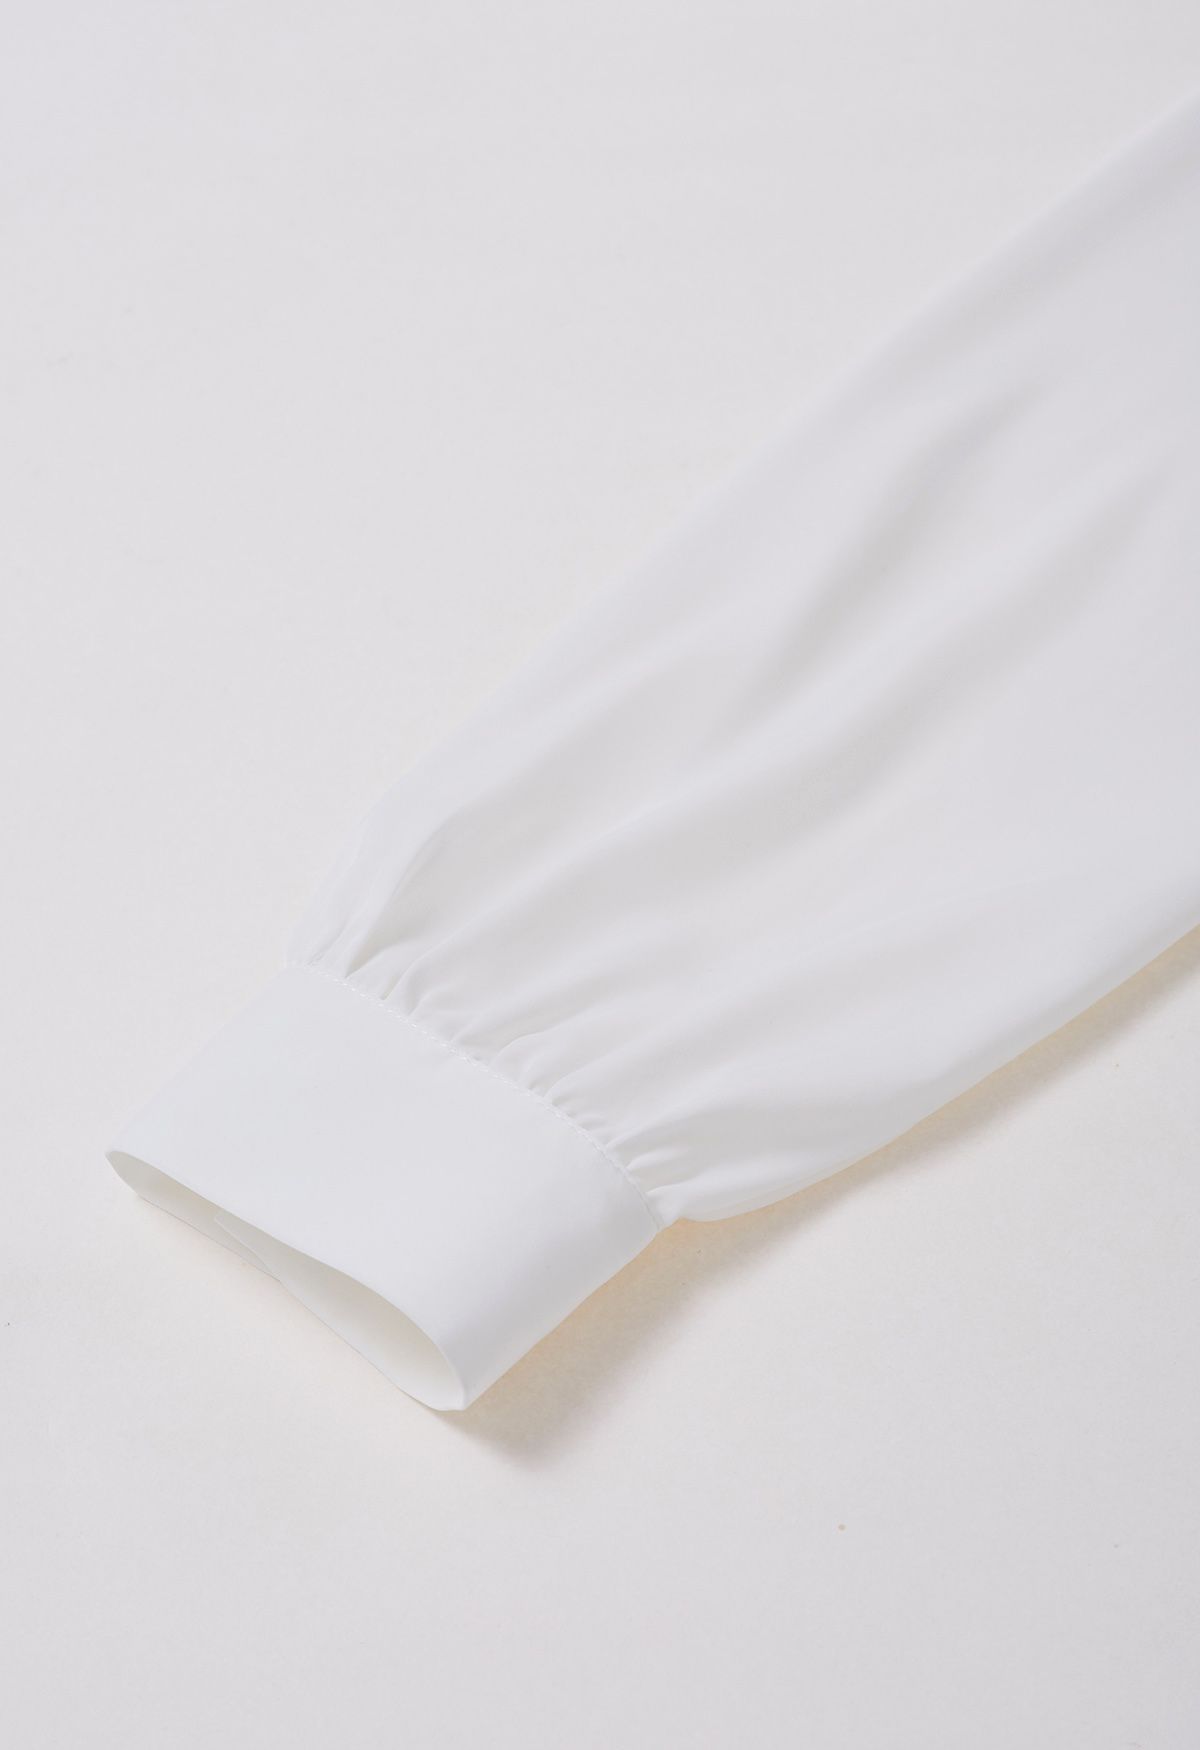 Tie-Neck Button Down Satin Shirt in White